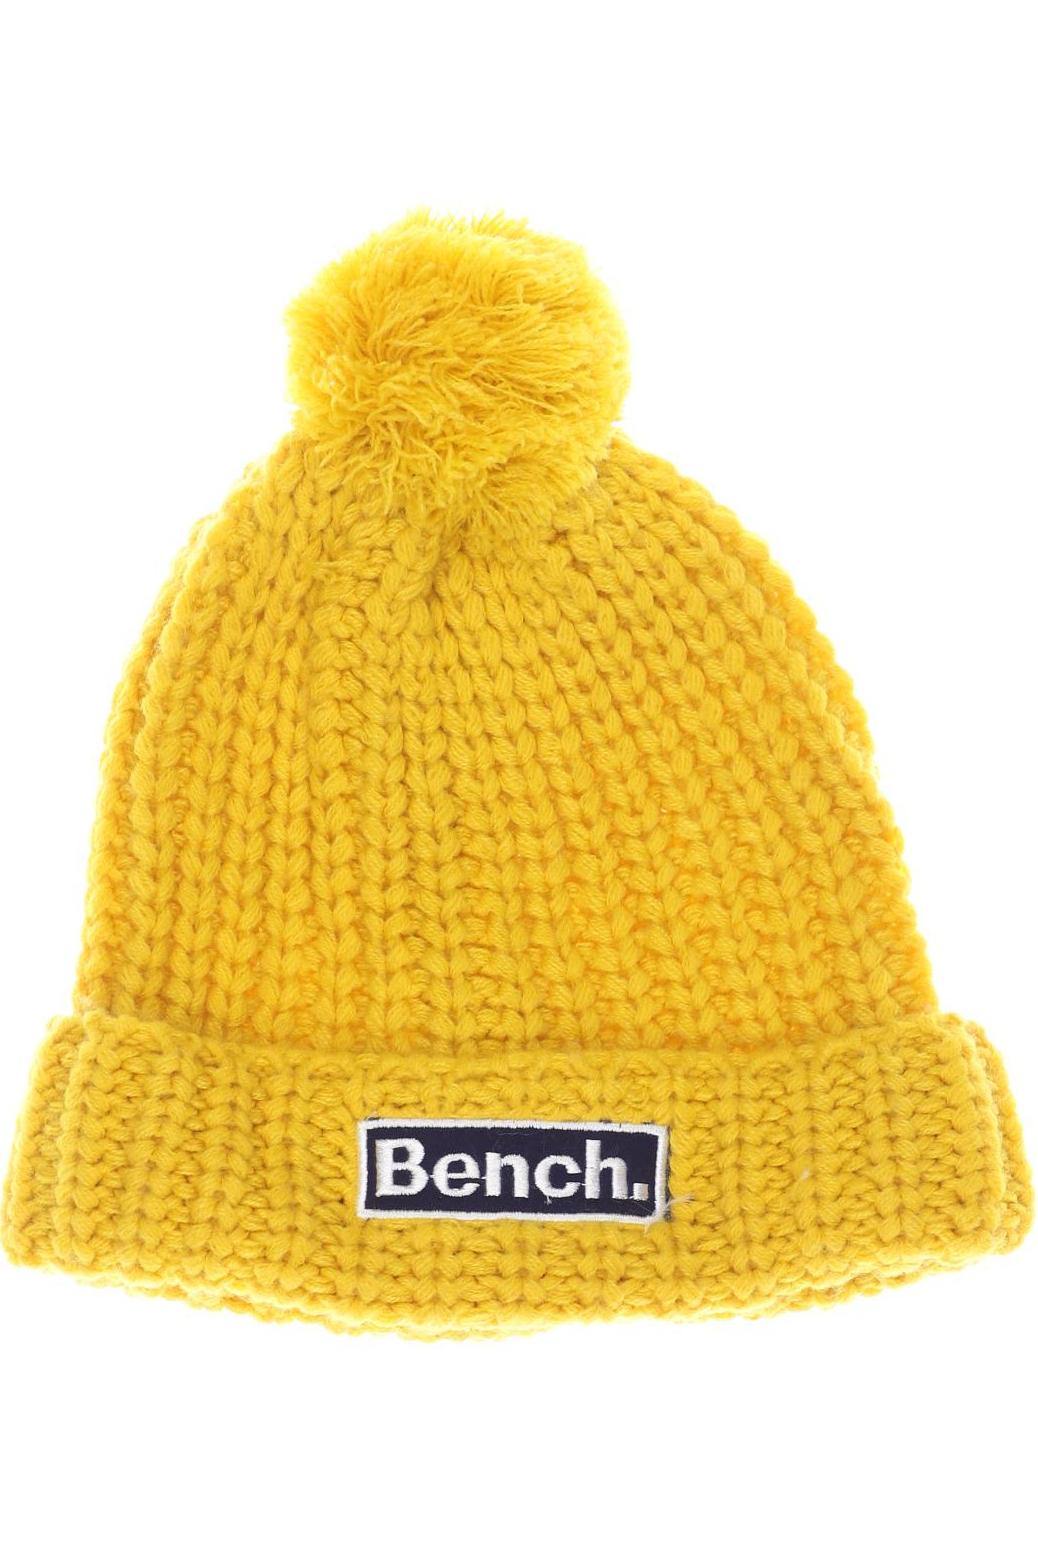 Bench. Damen Hut/Mütze, gelb von Bench.